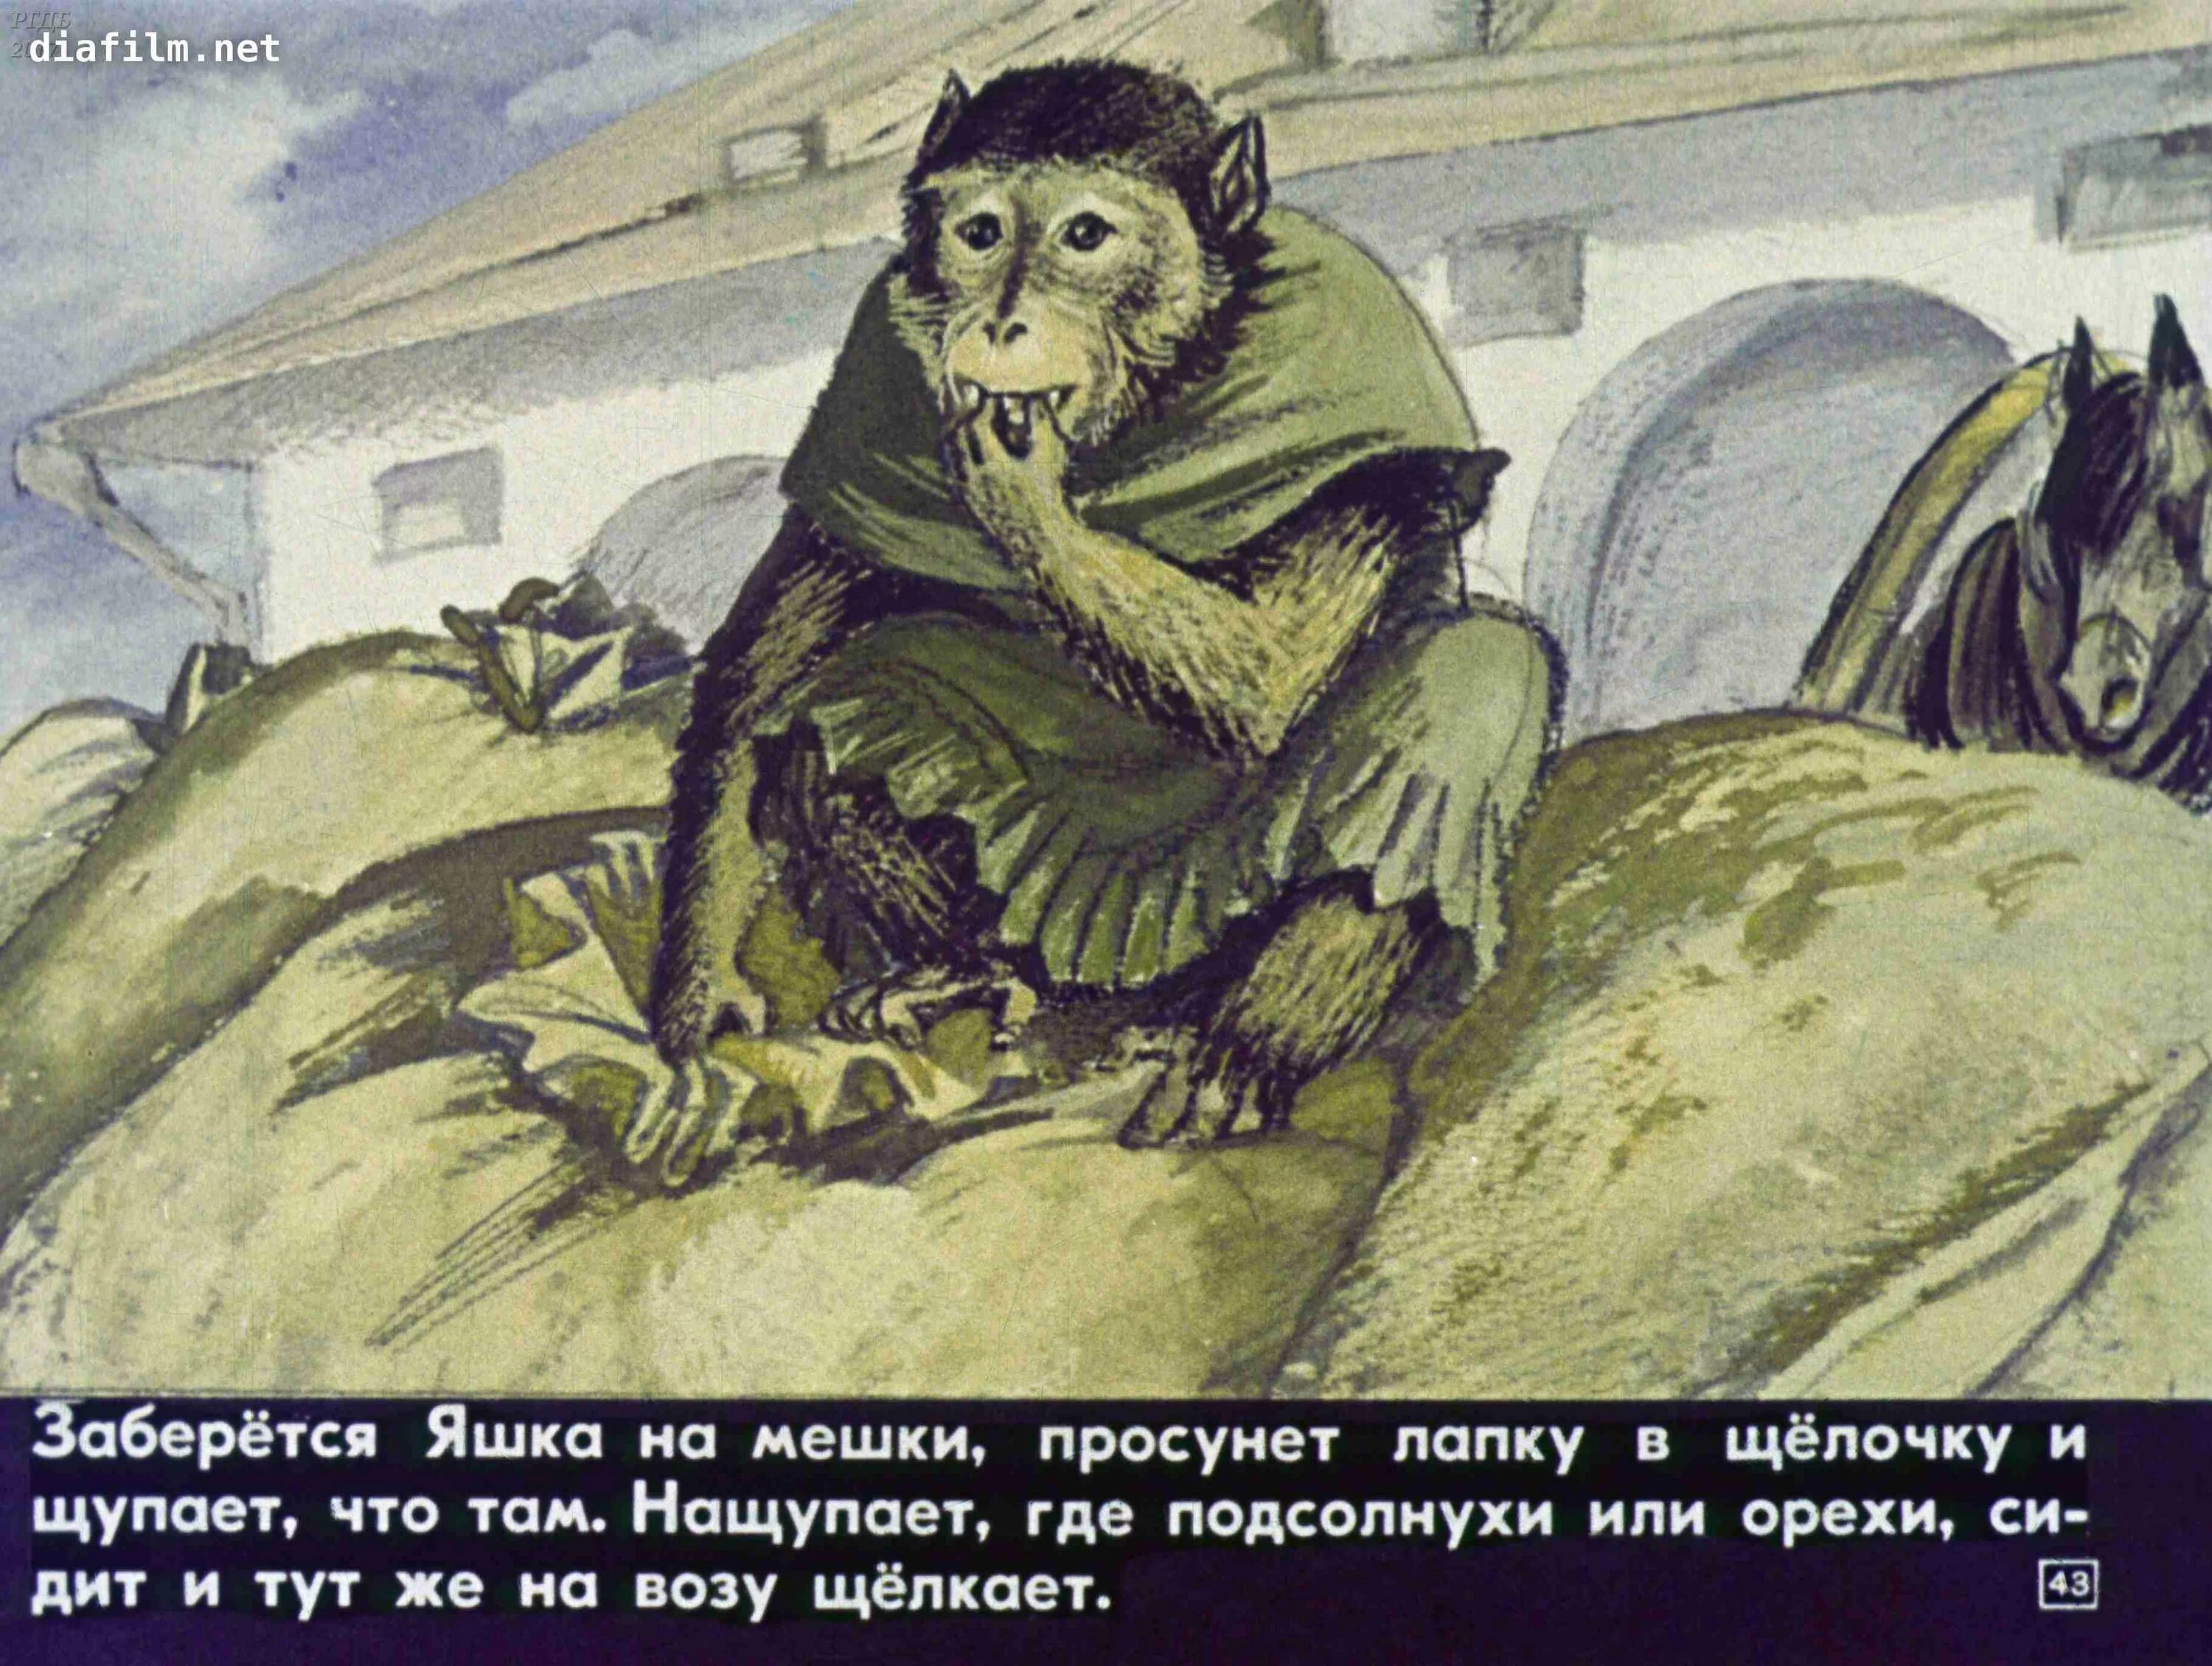 Б житков обезьянка читать. Иллюстрация к произведению б Житкова про обезьянку. Б Житков про обезьянку.